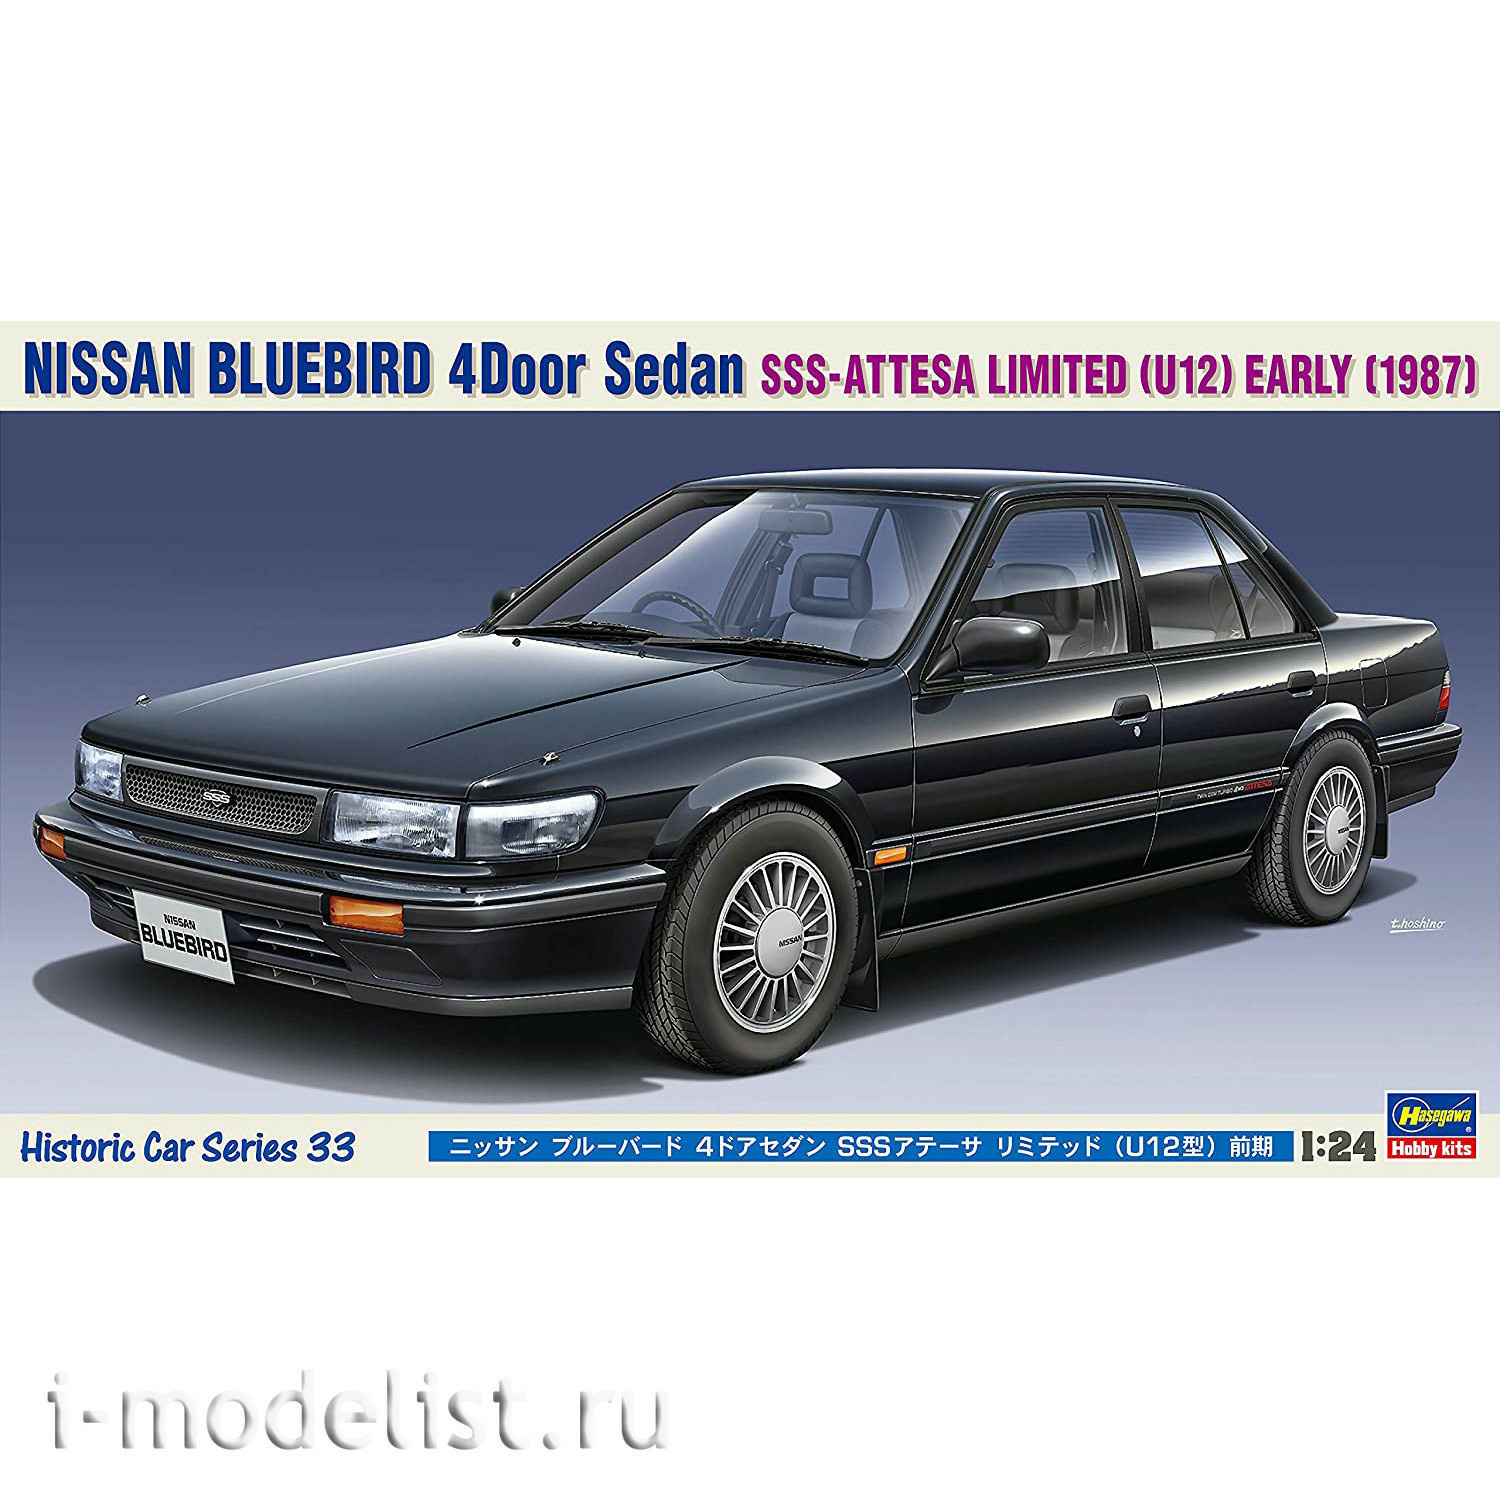 21133 Hasegawa 1/24 Car Nissan Bluebird 4Door Sedan SSS Attesa Limited (U12) Early (1987)